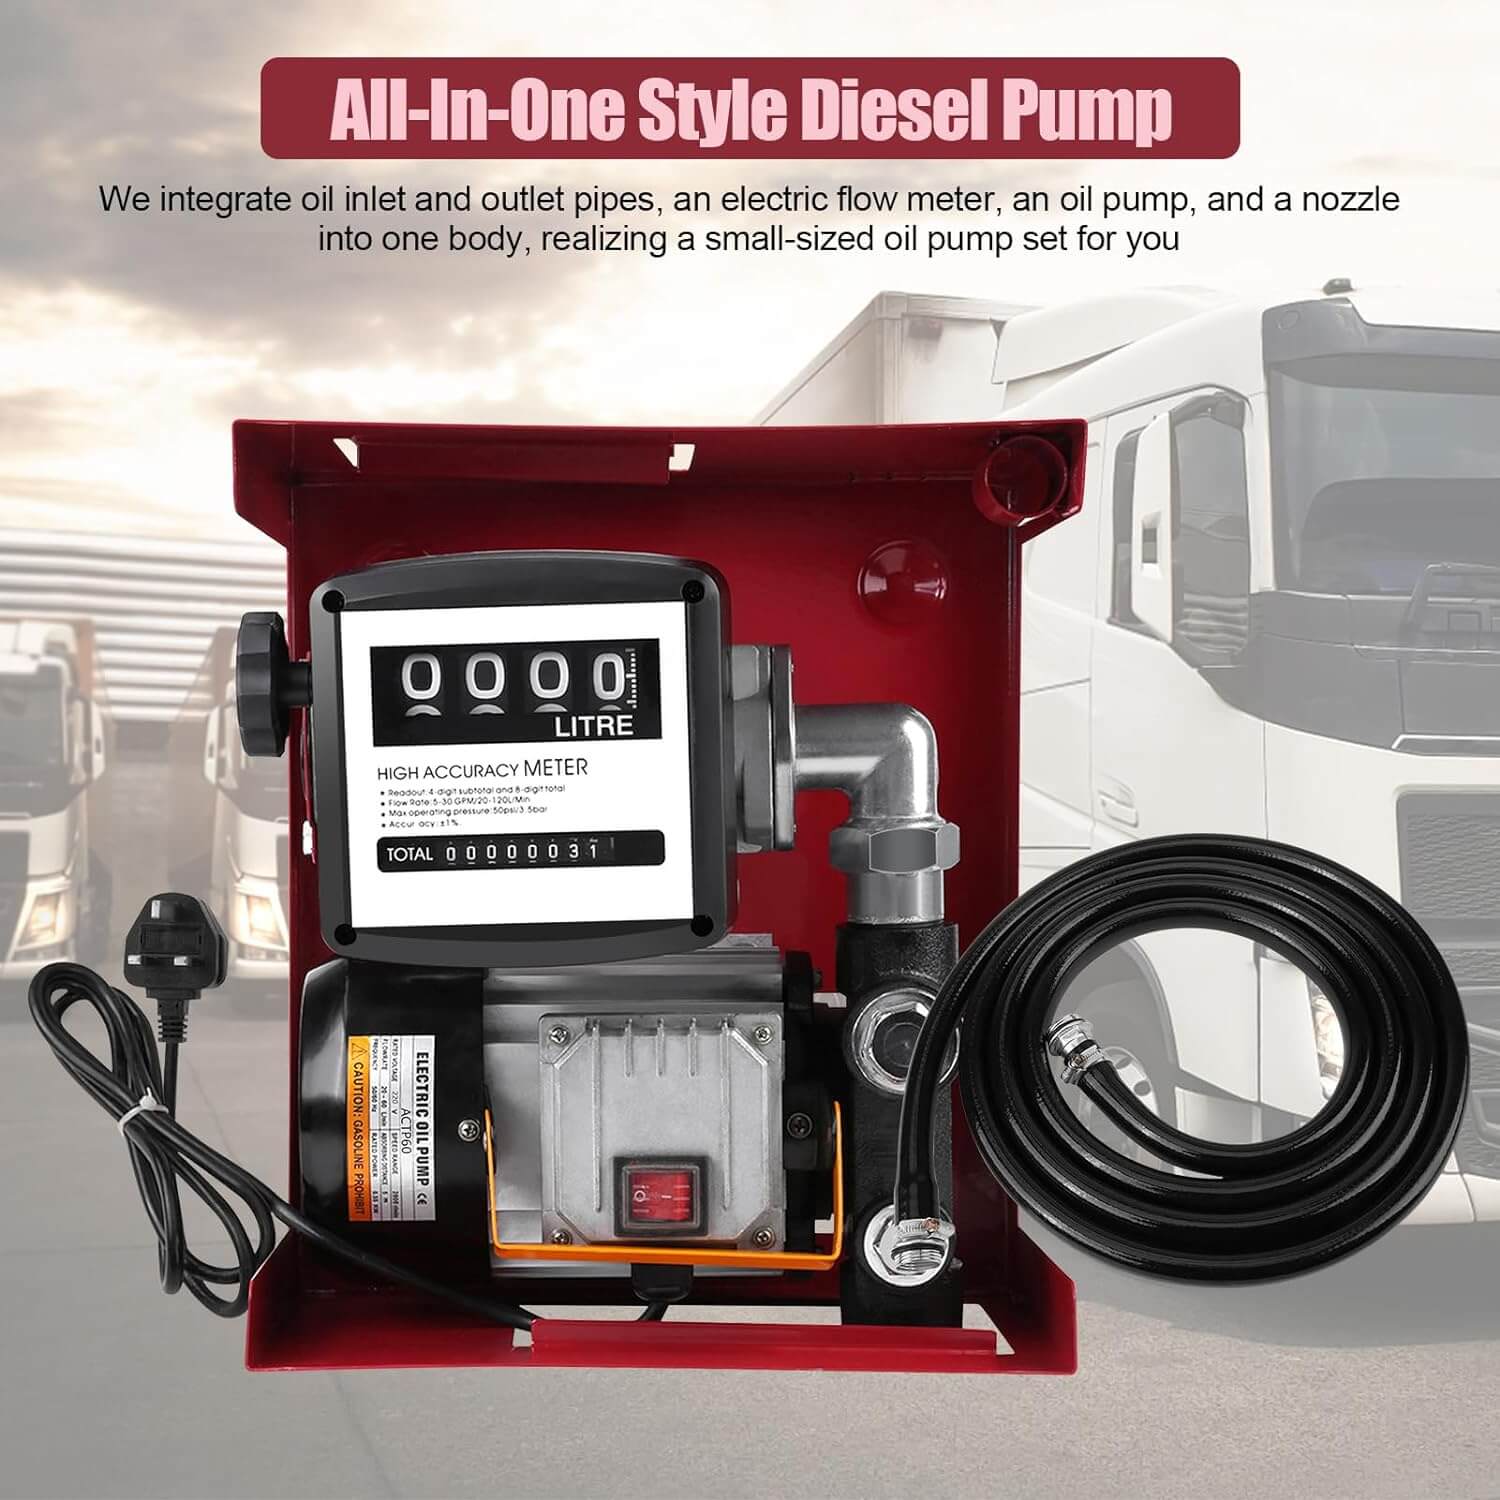 Diesel Pump 550W Review